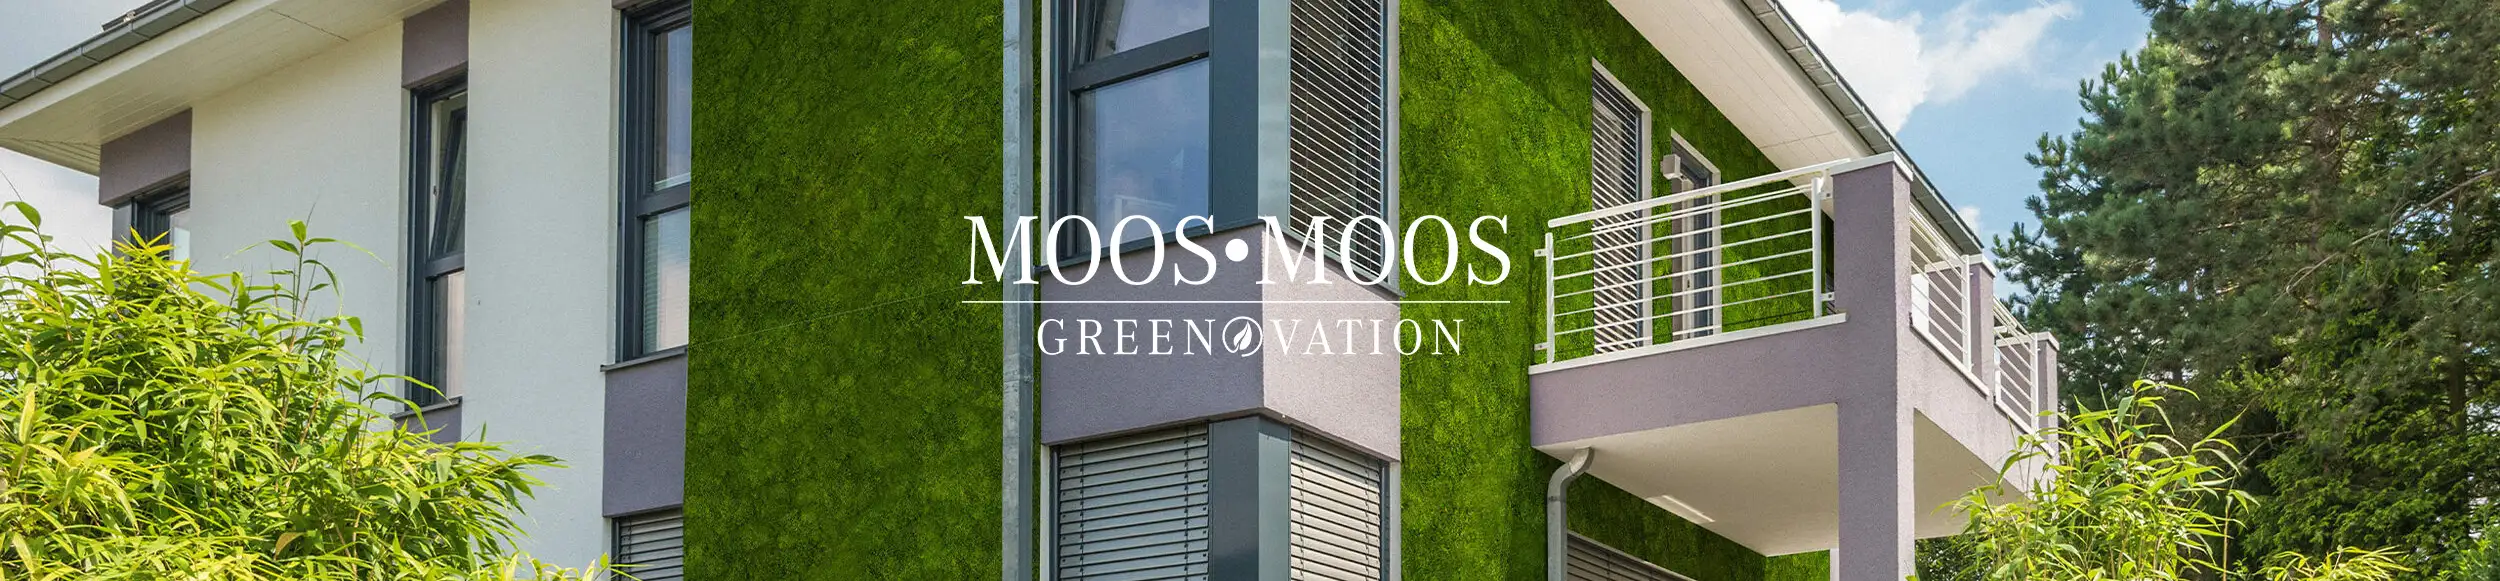 Greenovation Titelbild. Fassadenbegrünung mit Moos